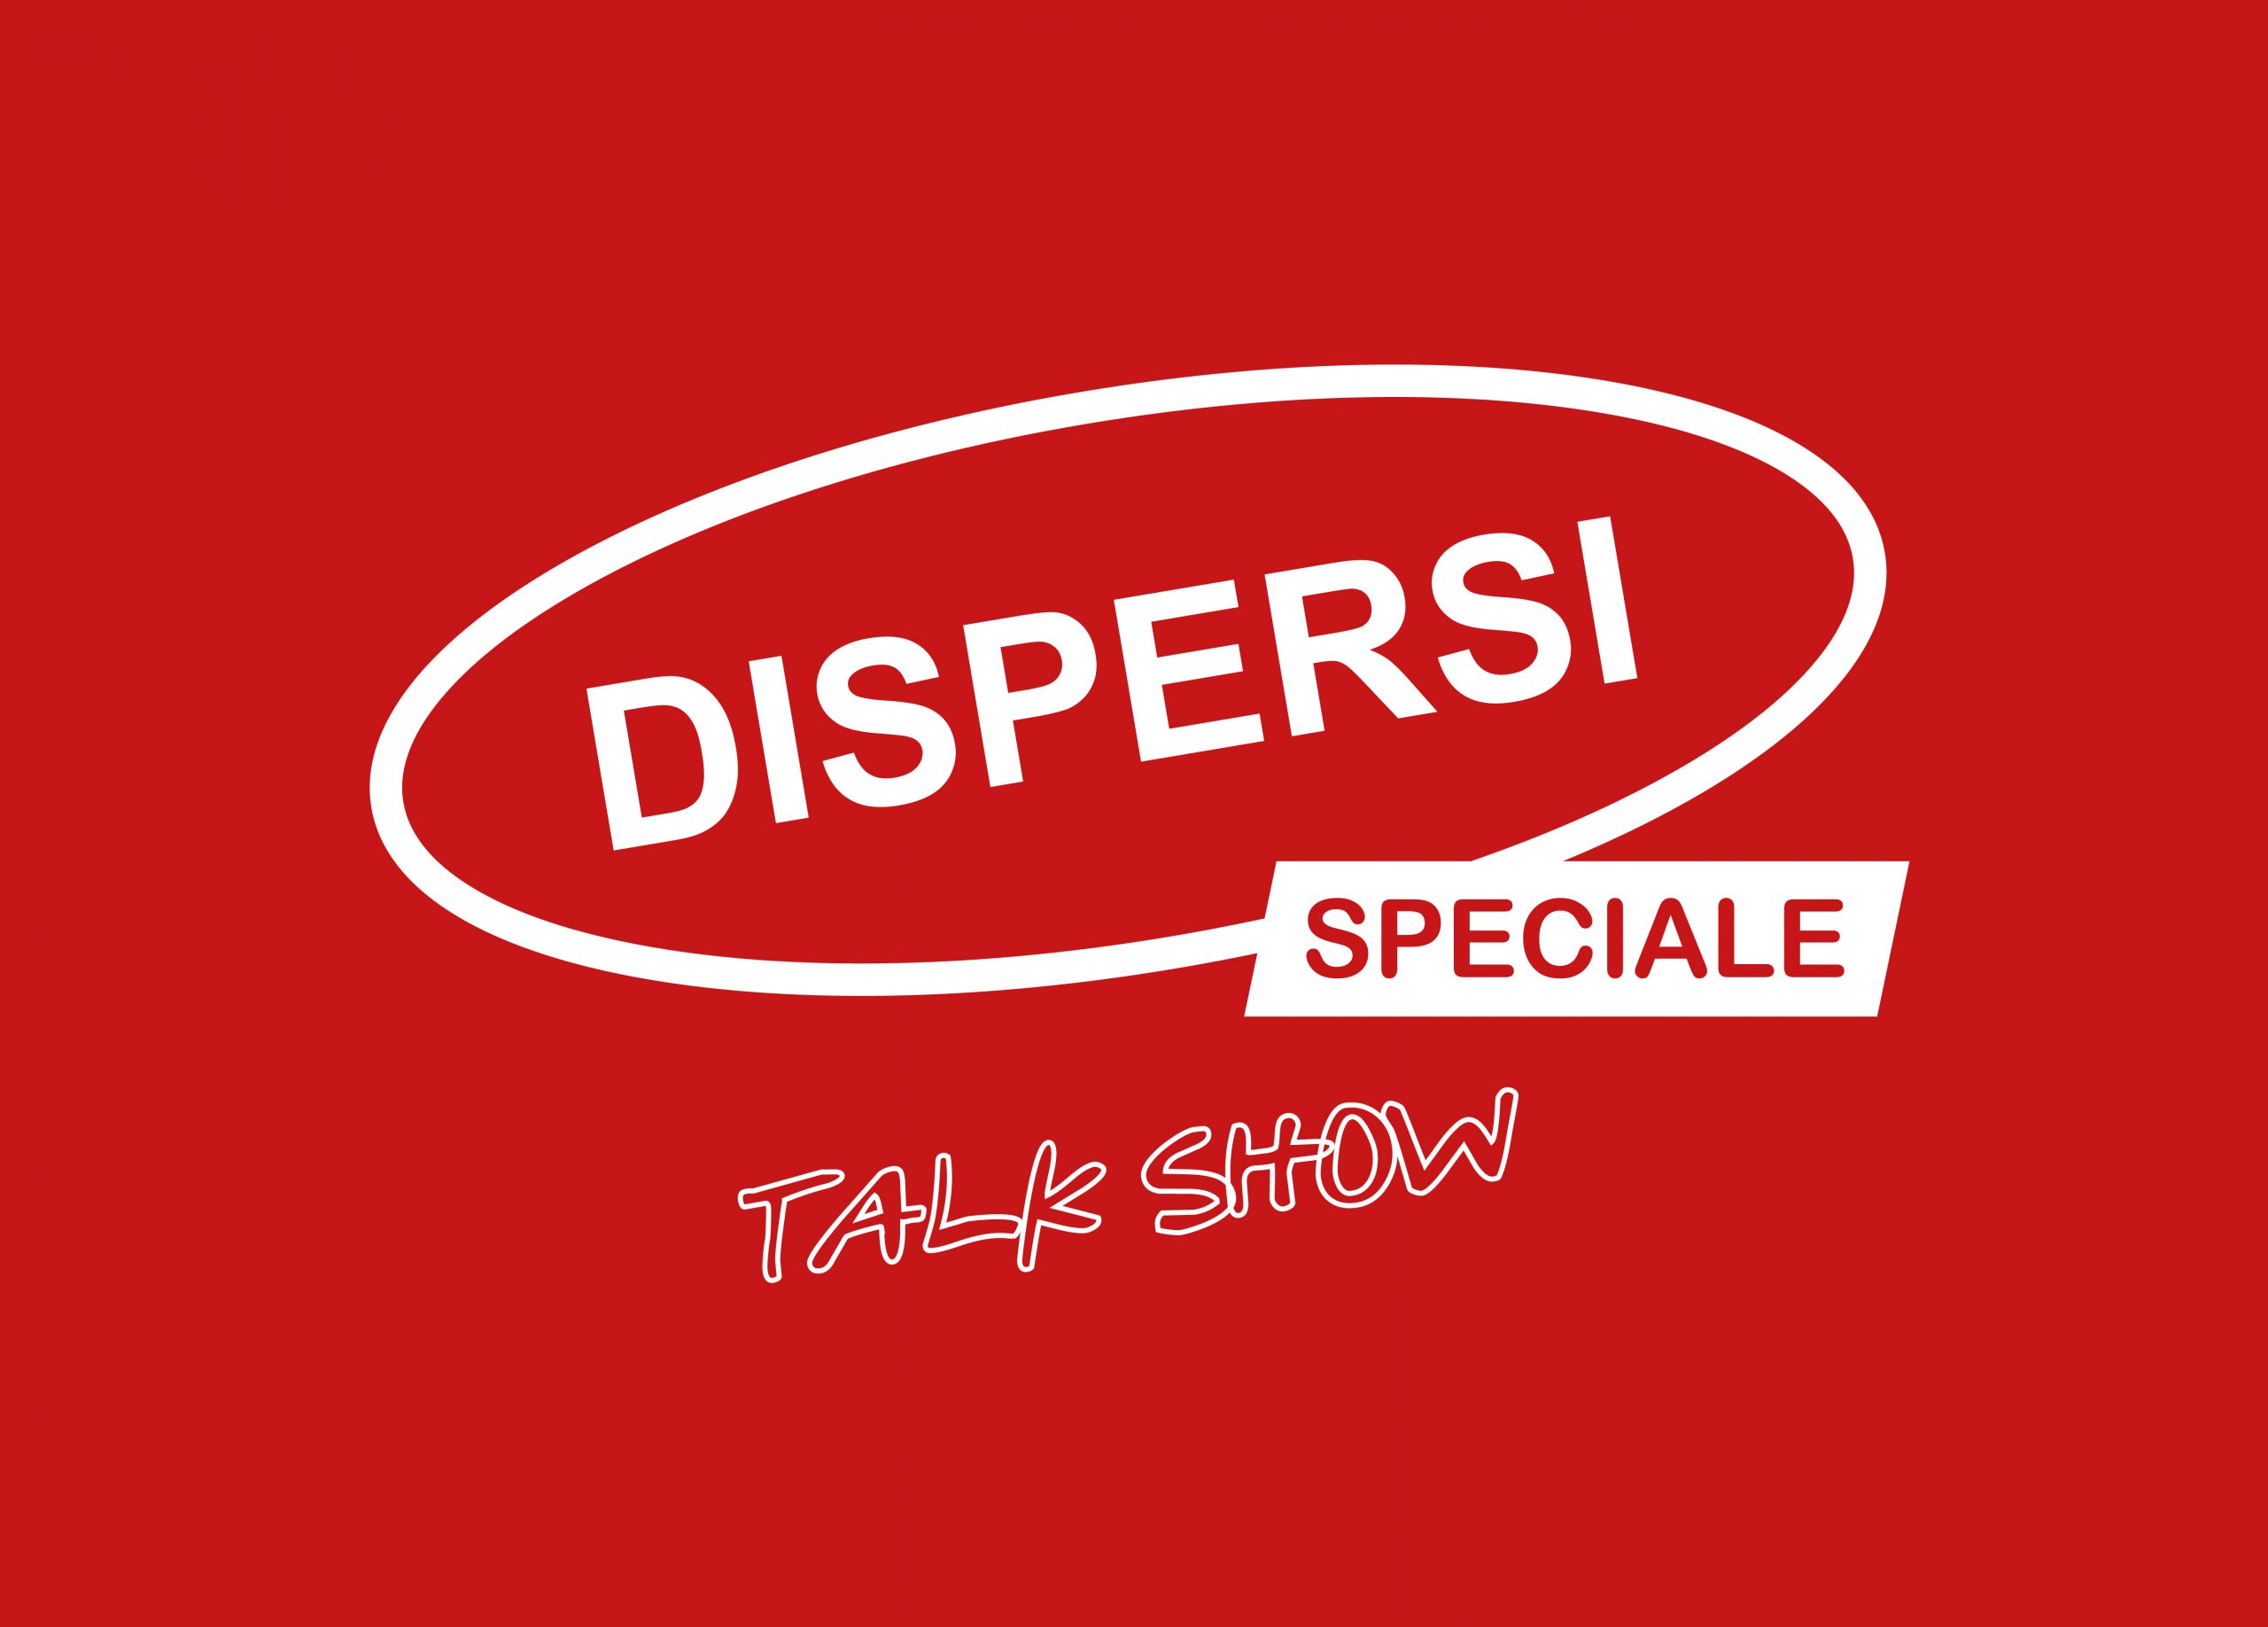 Dispersi - Speciale talk show: Conferenza tra arte e scienza